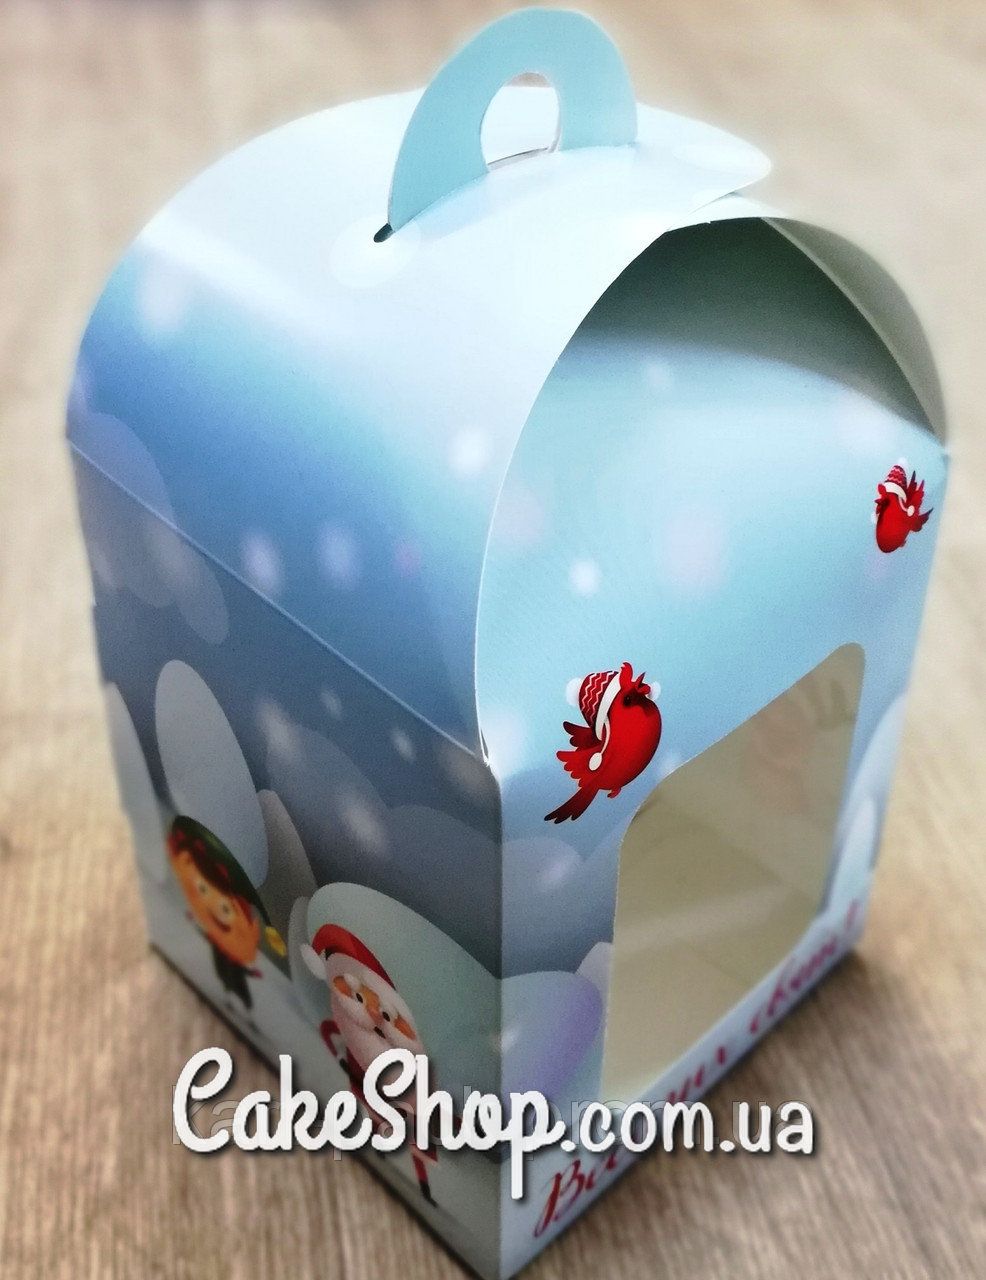 ⋗ Коробка для подарков Веселих свят, 12х12х15 см купить в Украине ➛ CakeShop.com.ua, фото